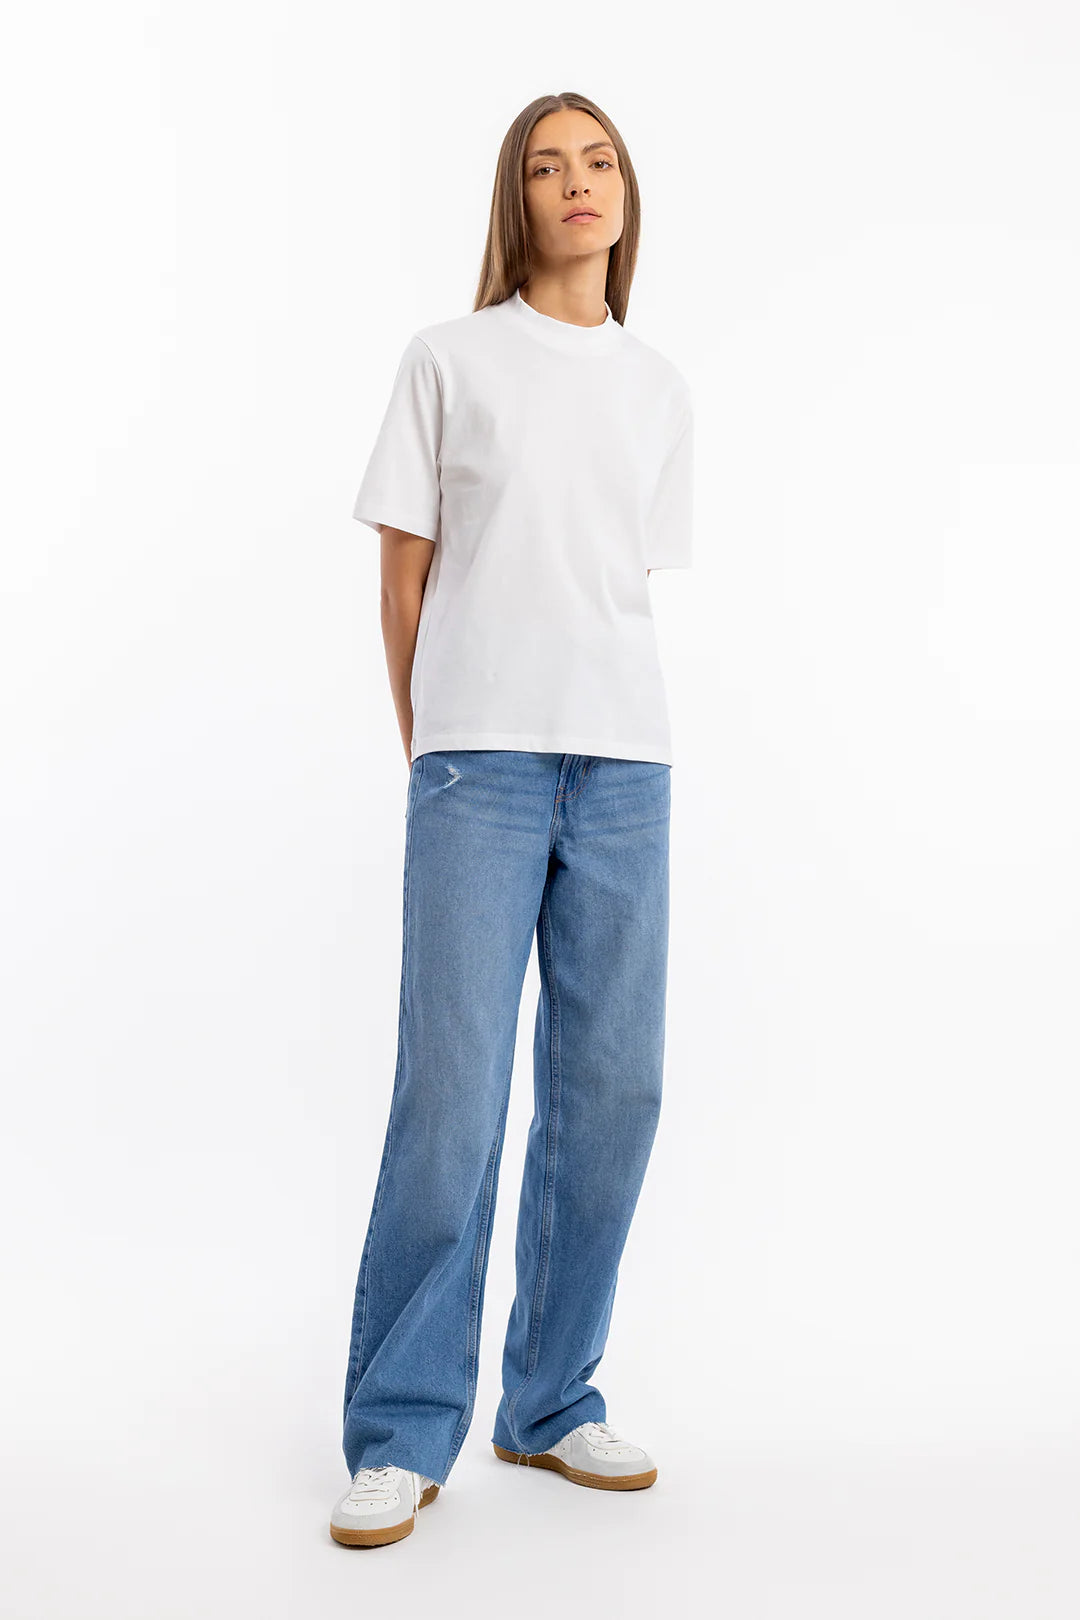 T-Shirt mit breitem Kragen Bio Baumwolle - Weiß - Unisex